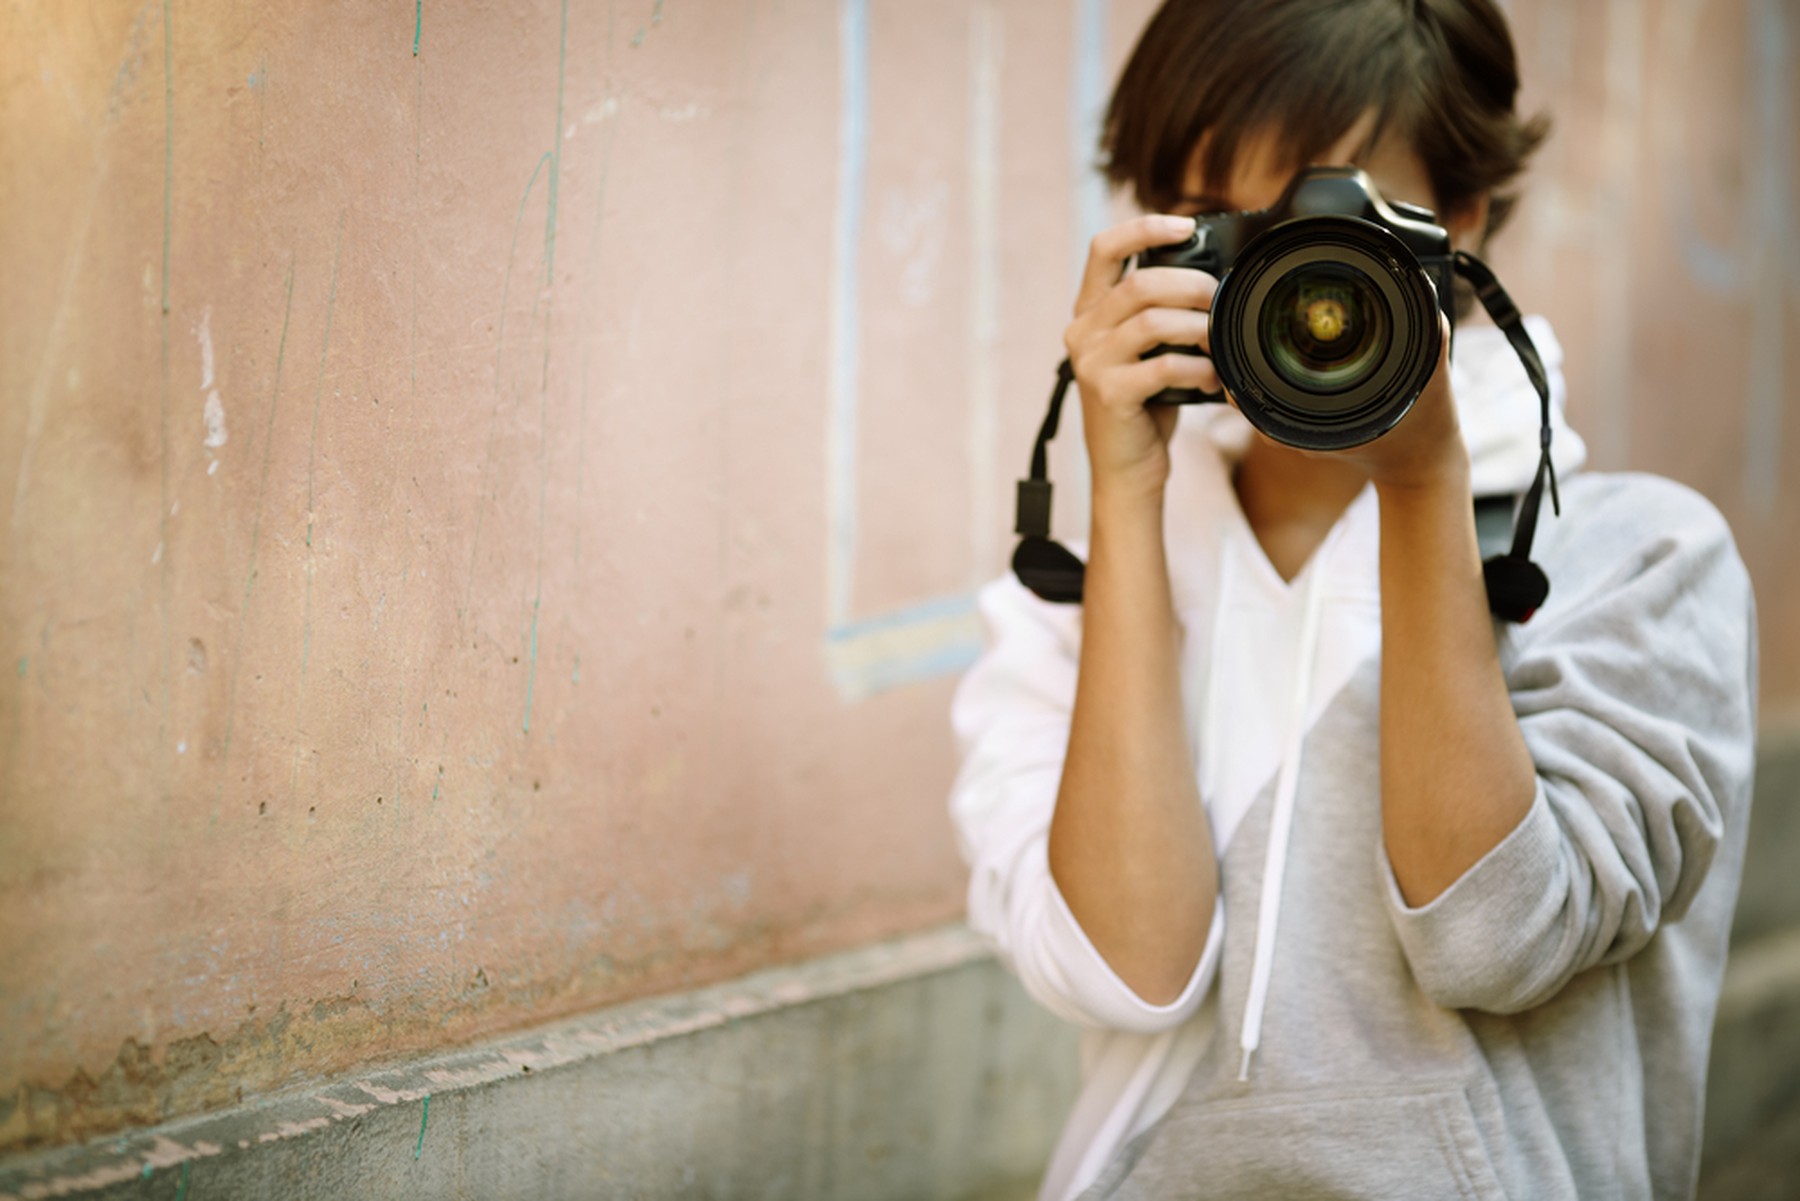 Mujer fotógrafa con una cámara réflex en las manos. Lleva una sudadera gris y blanca.